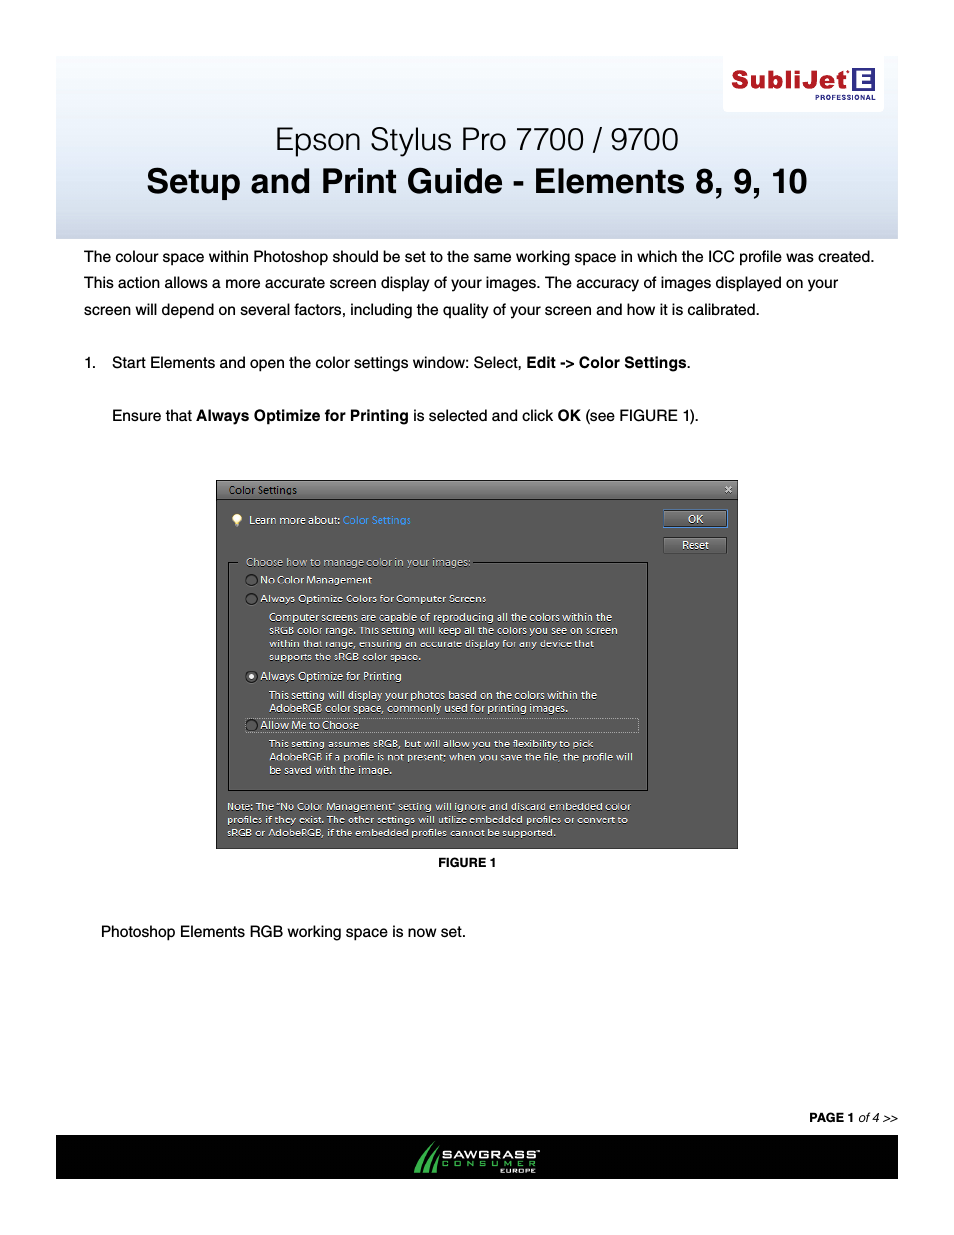 SubliJet E Epson Stylus Pro 7900 (Windows ICC Profile Setup): Print & Setup Guide Photoshop Elements 8 - 10